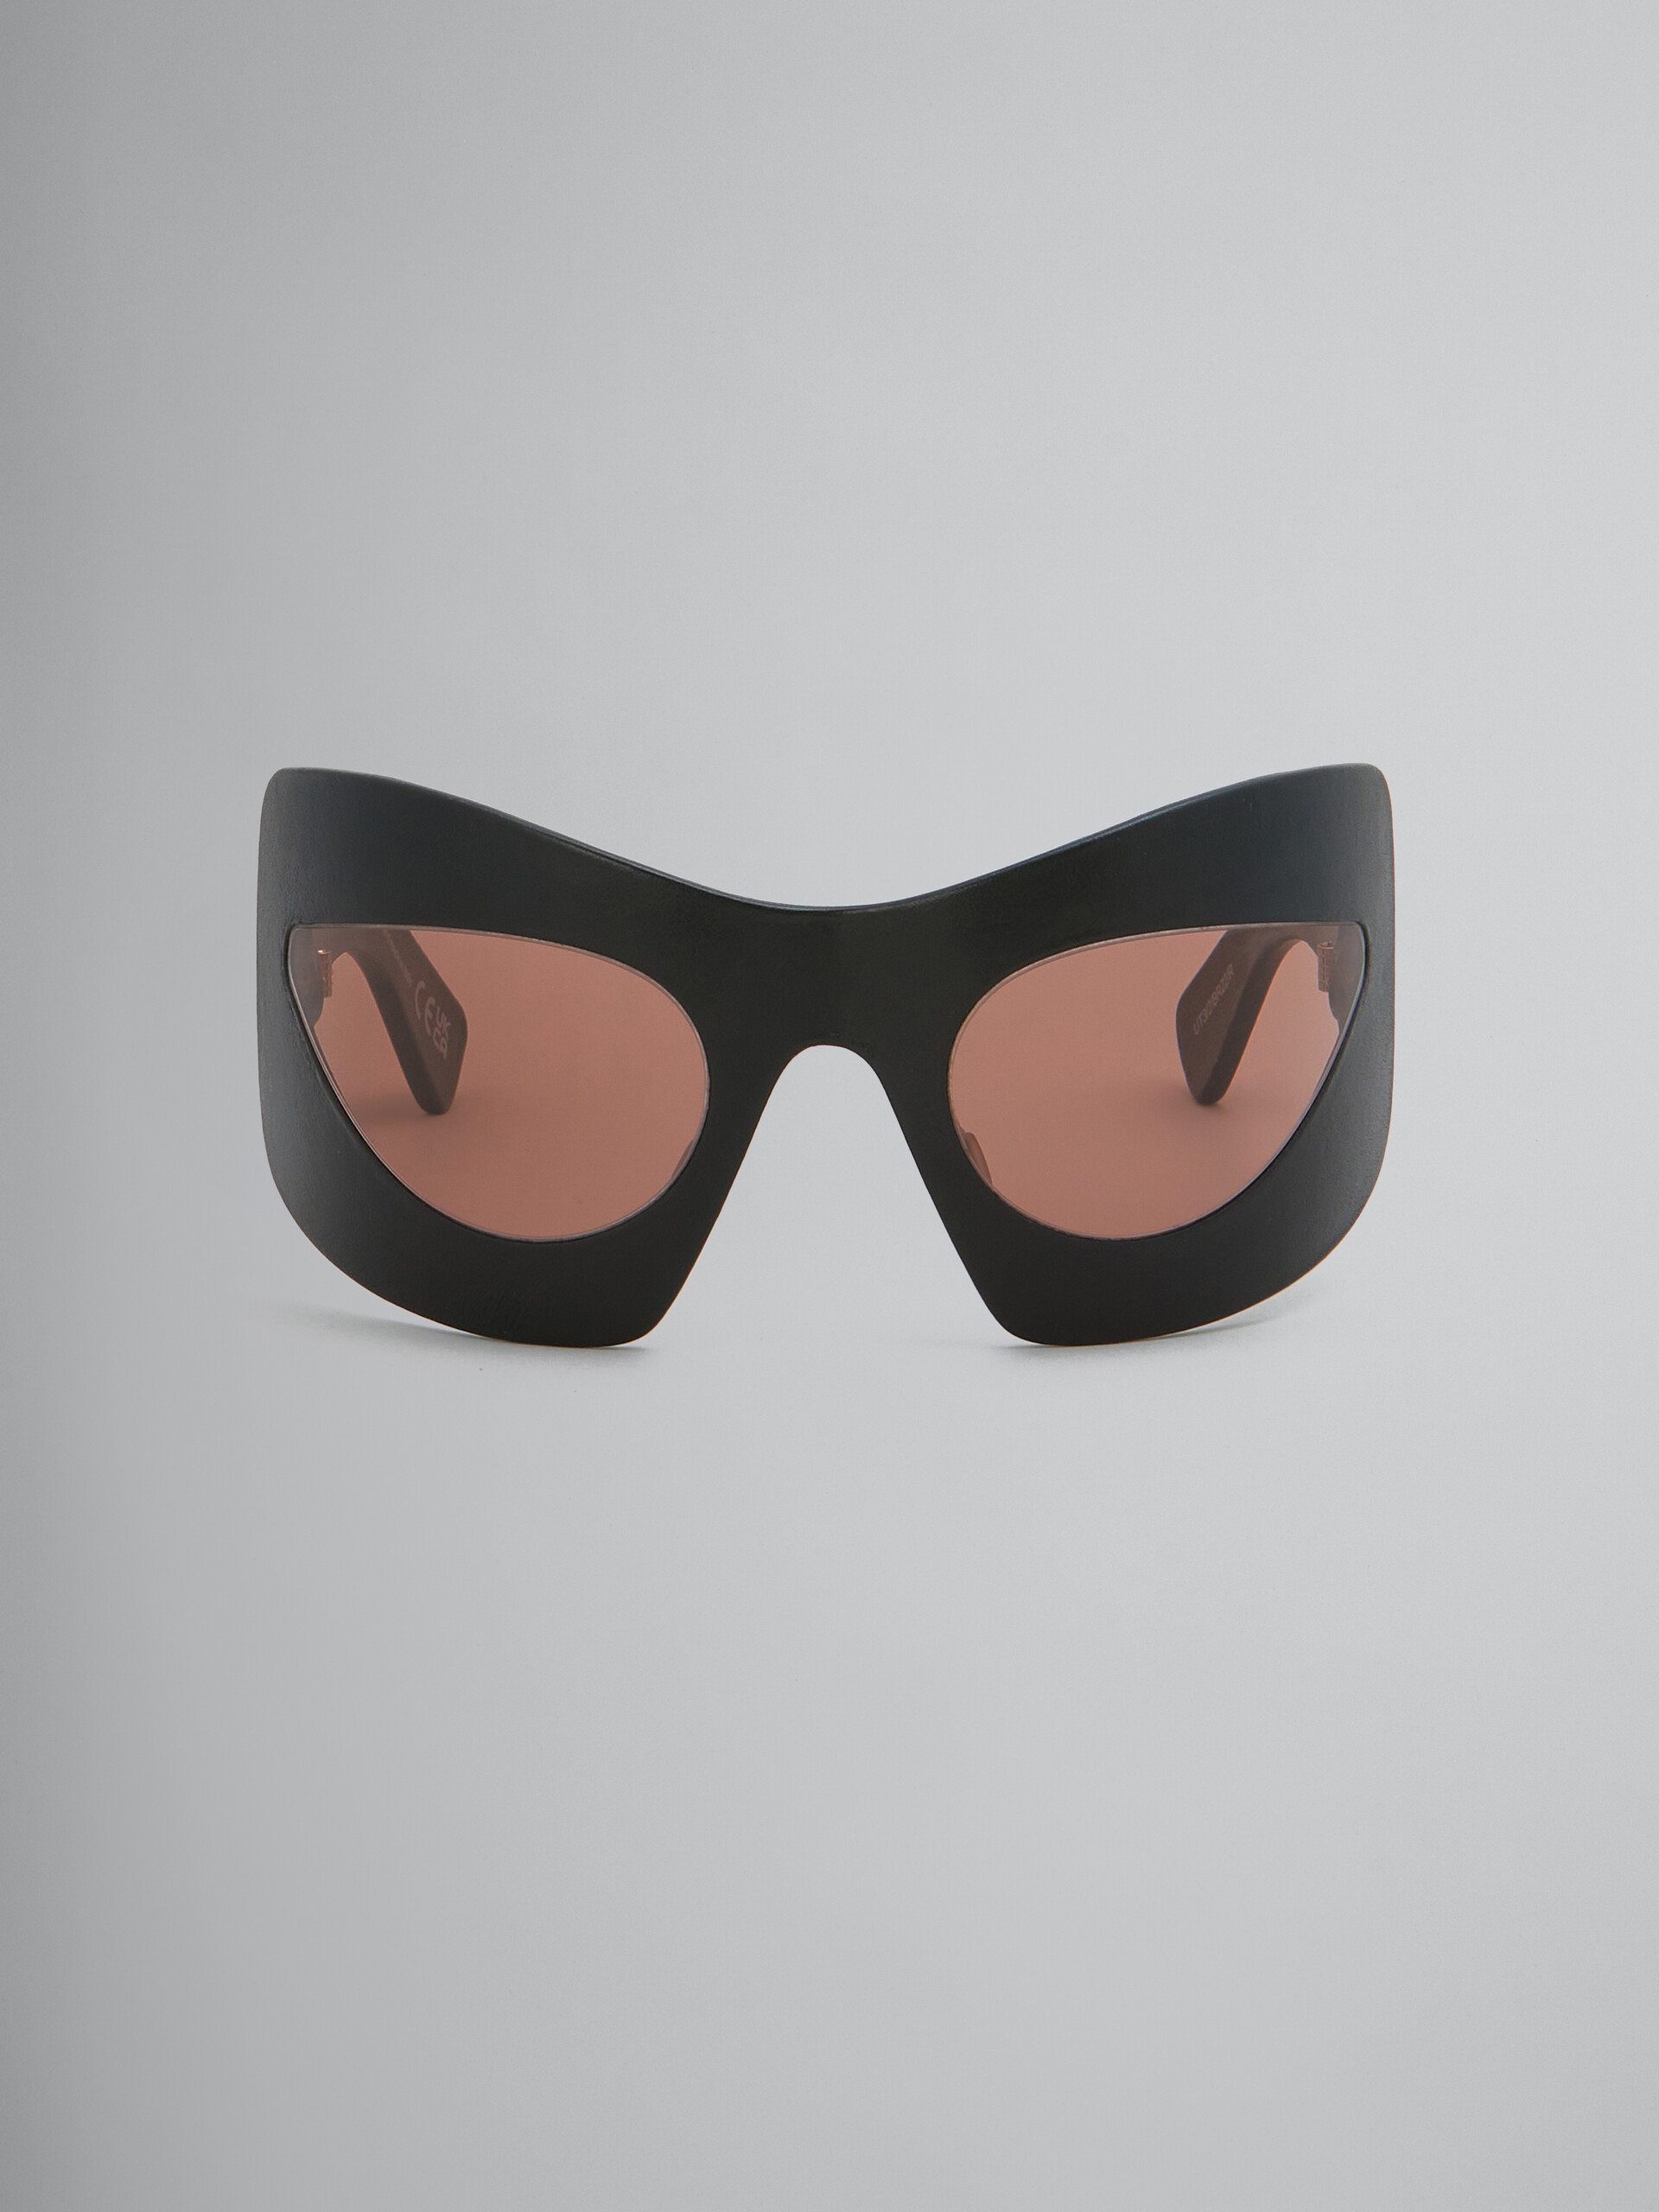 Karakum black leather sunglasses - Optical - Image 1